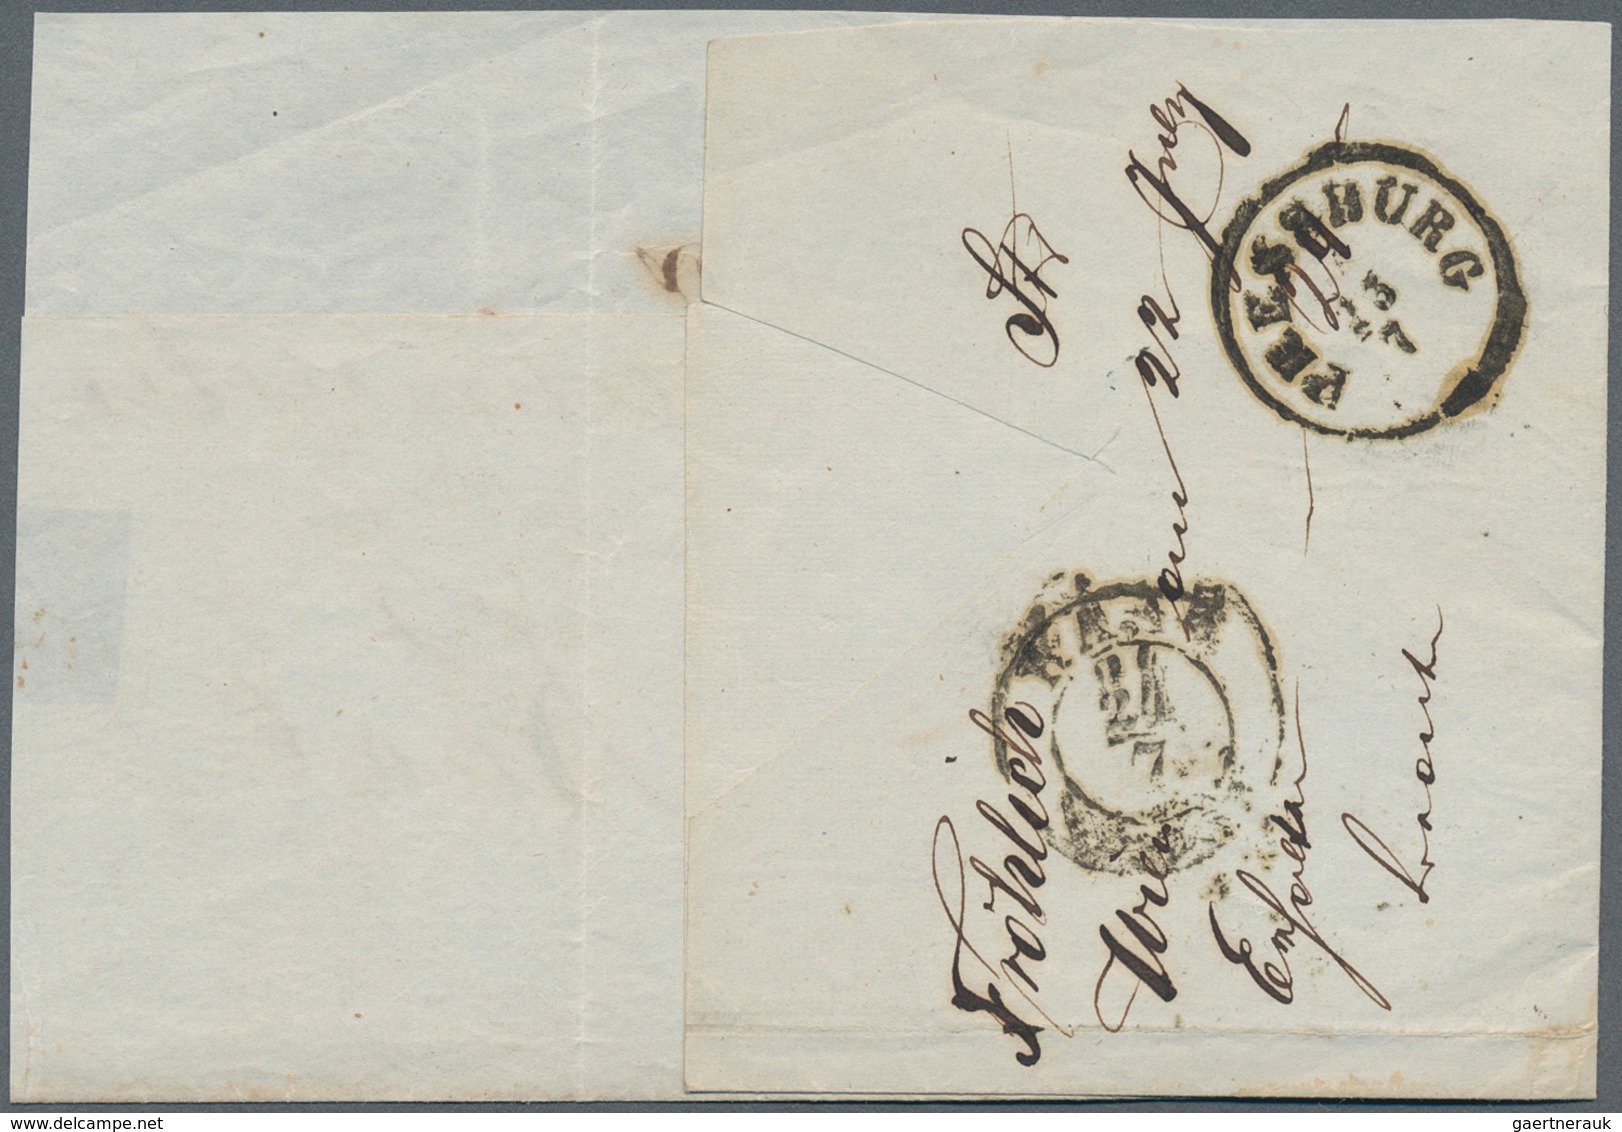 15763 Österreich - Stempel: WIEN: 1851/58, acht Faltbriefe bzw. -hüllen alle mit Einzelfrankaturen 9 Kr. b